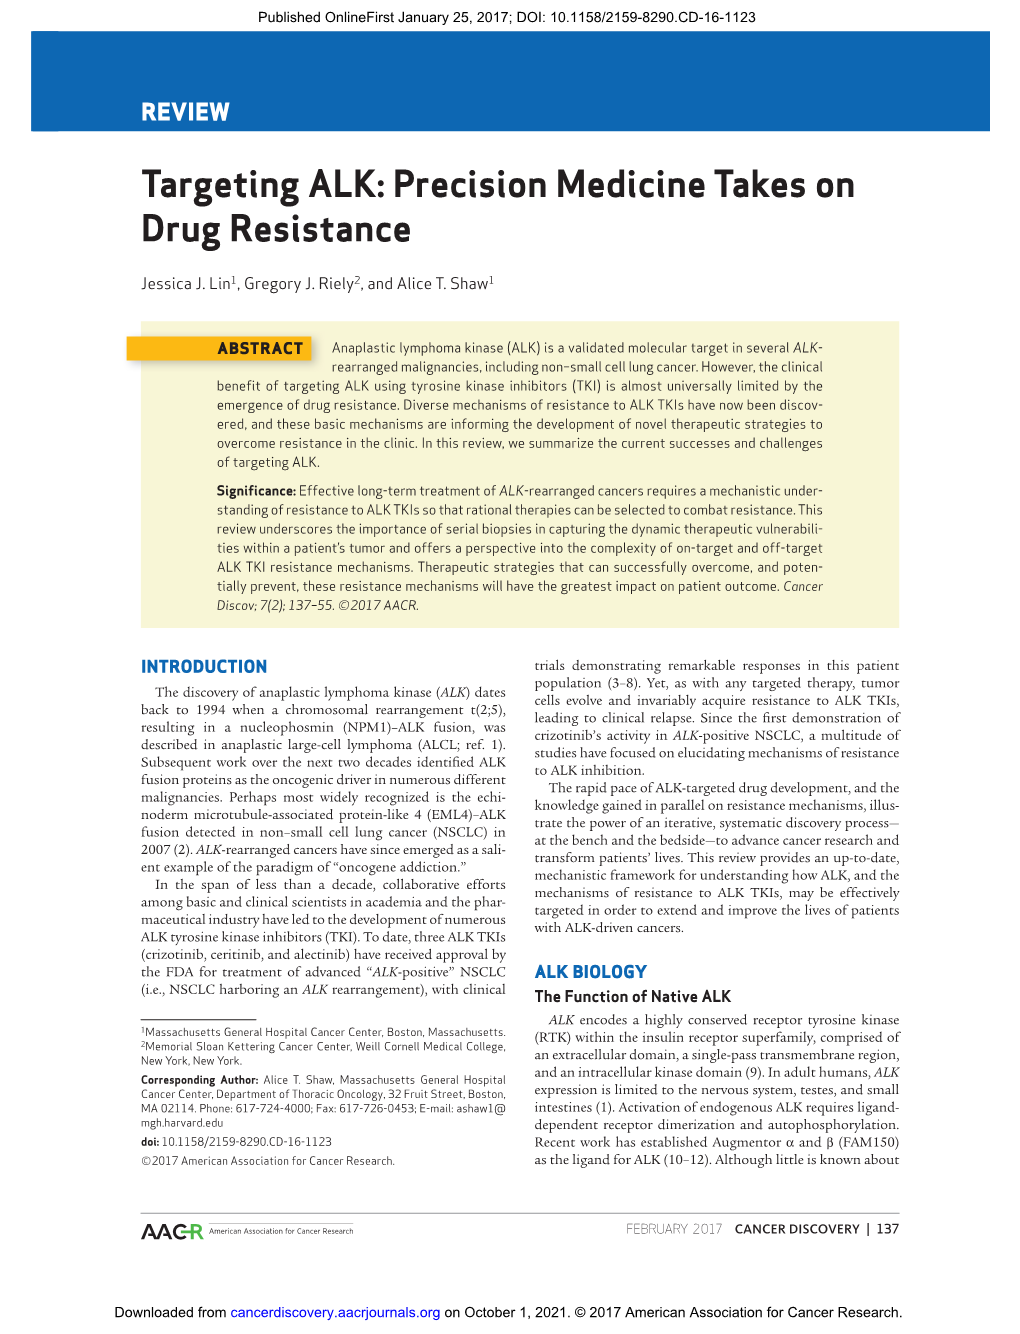 Targeting ALK: Precision Medicine Takes on Drug Resistance